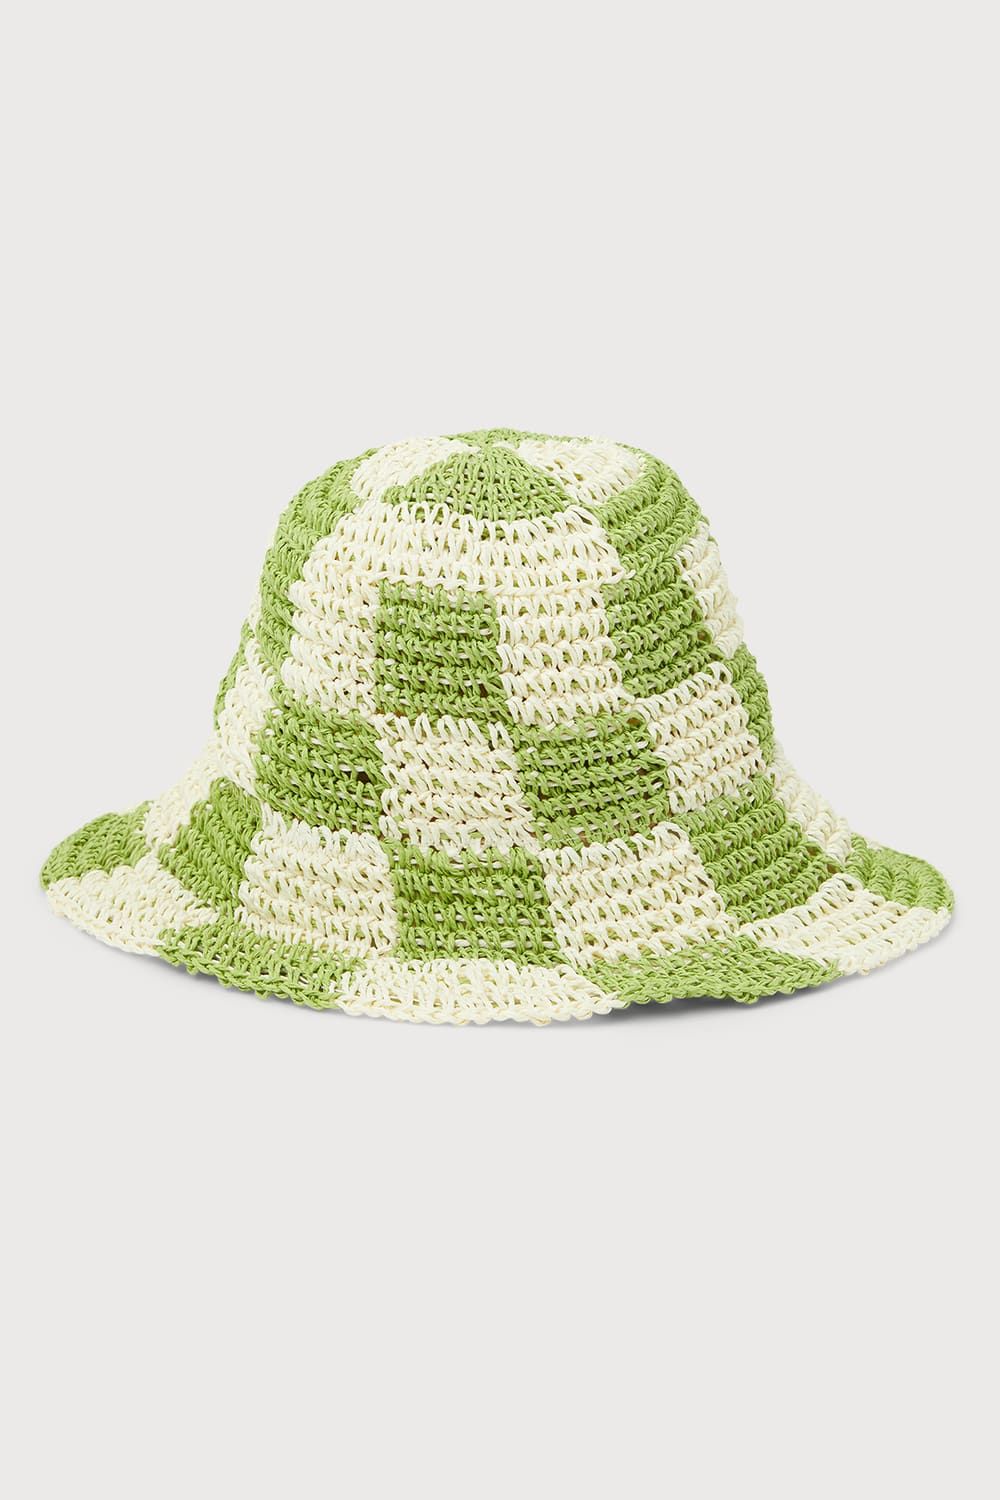 Sadie Green and White Checkered Straw Bucket Hat | Lulus